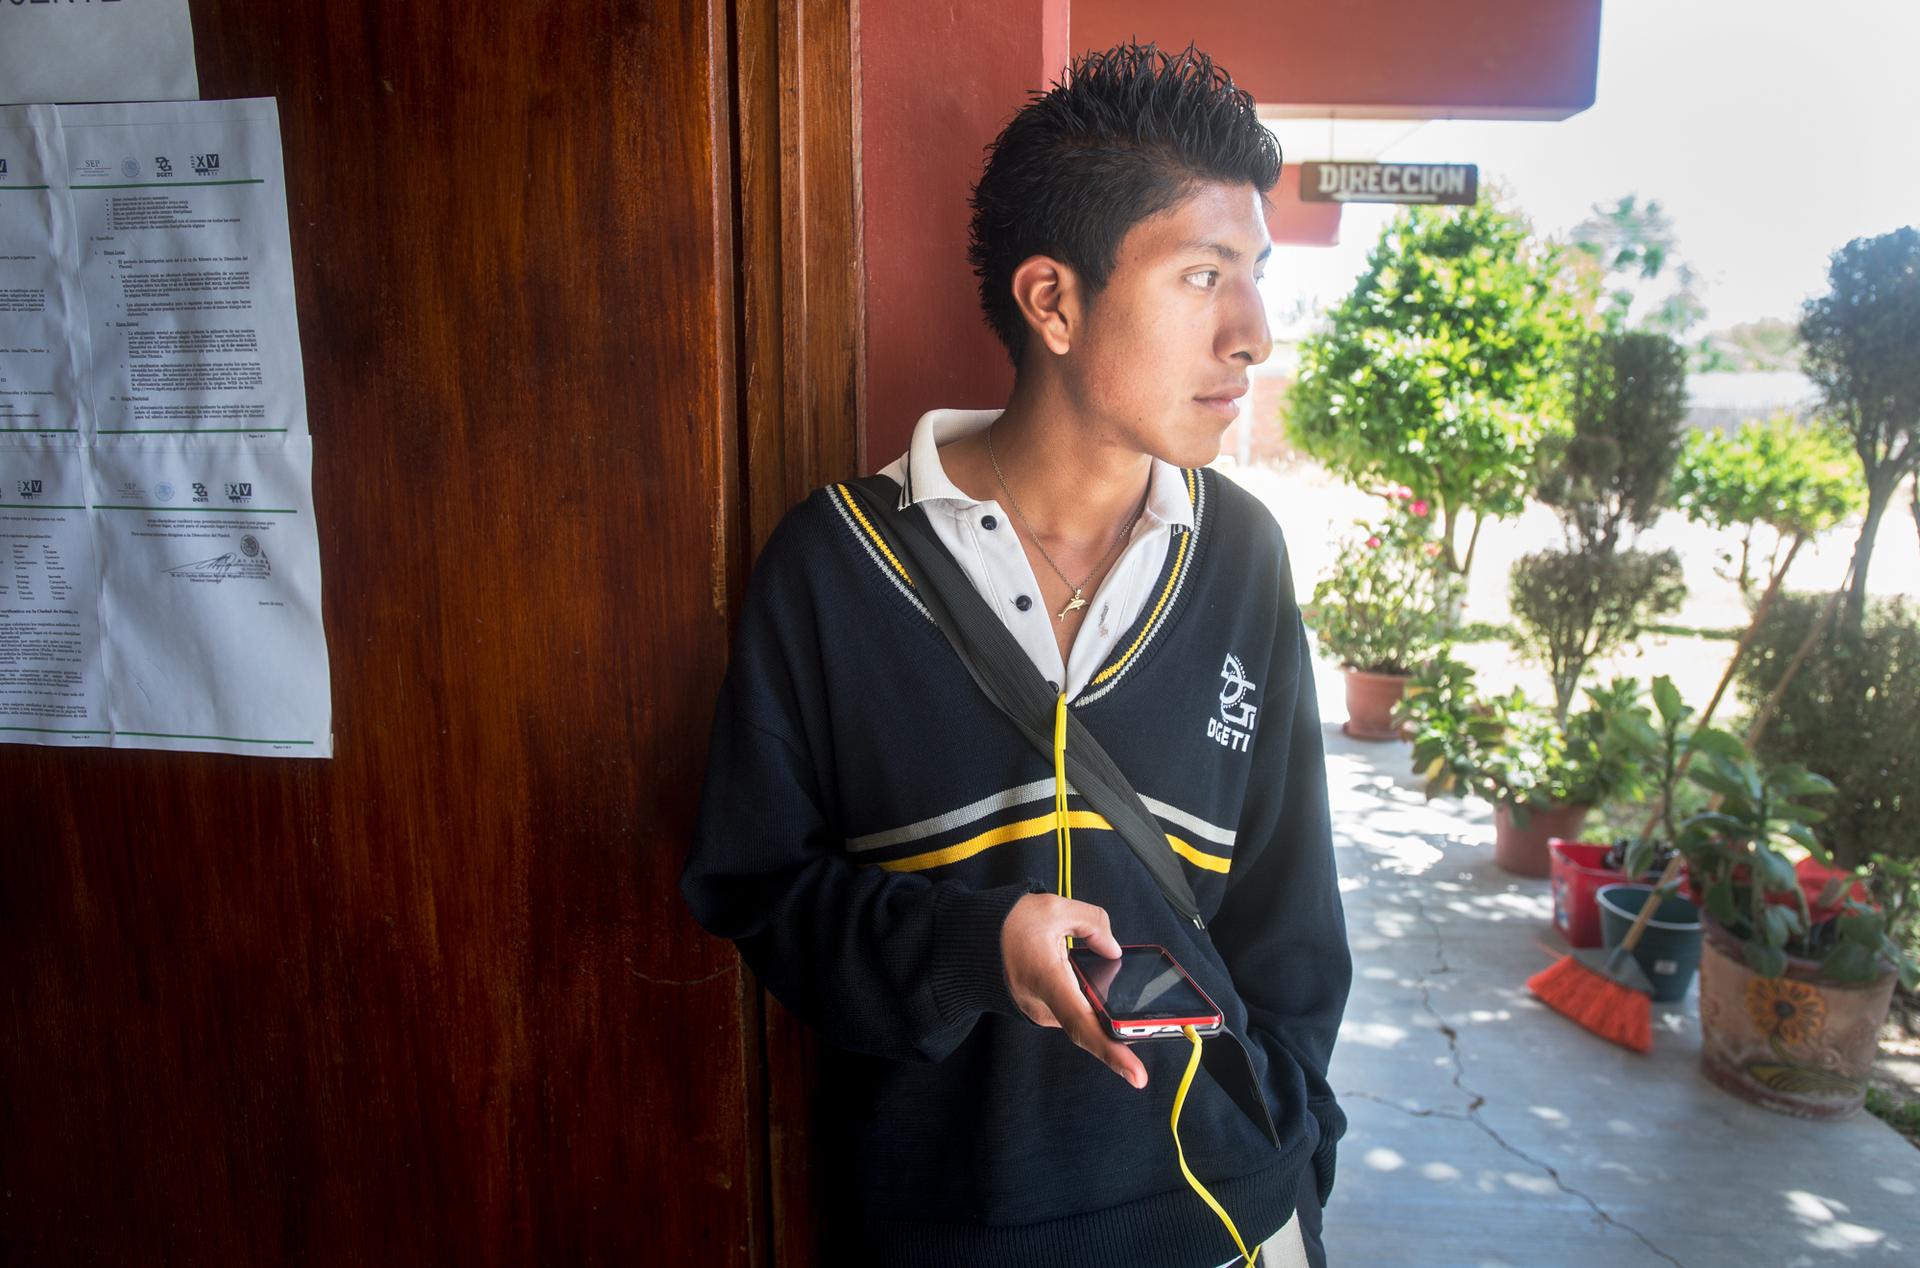 Student with headphones in outdoor school hallway